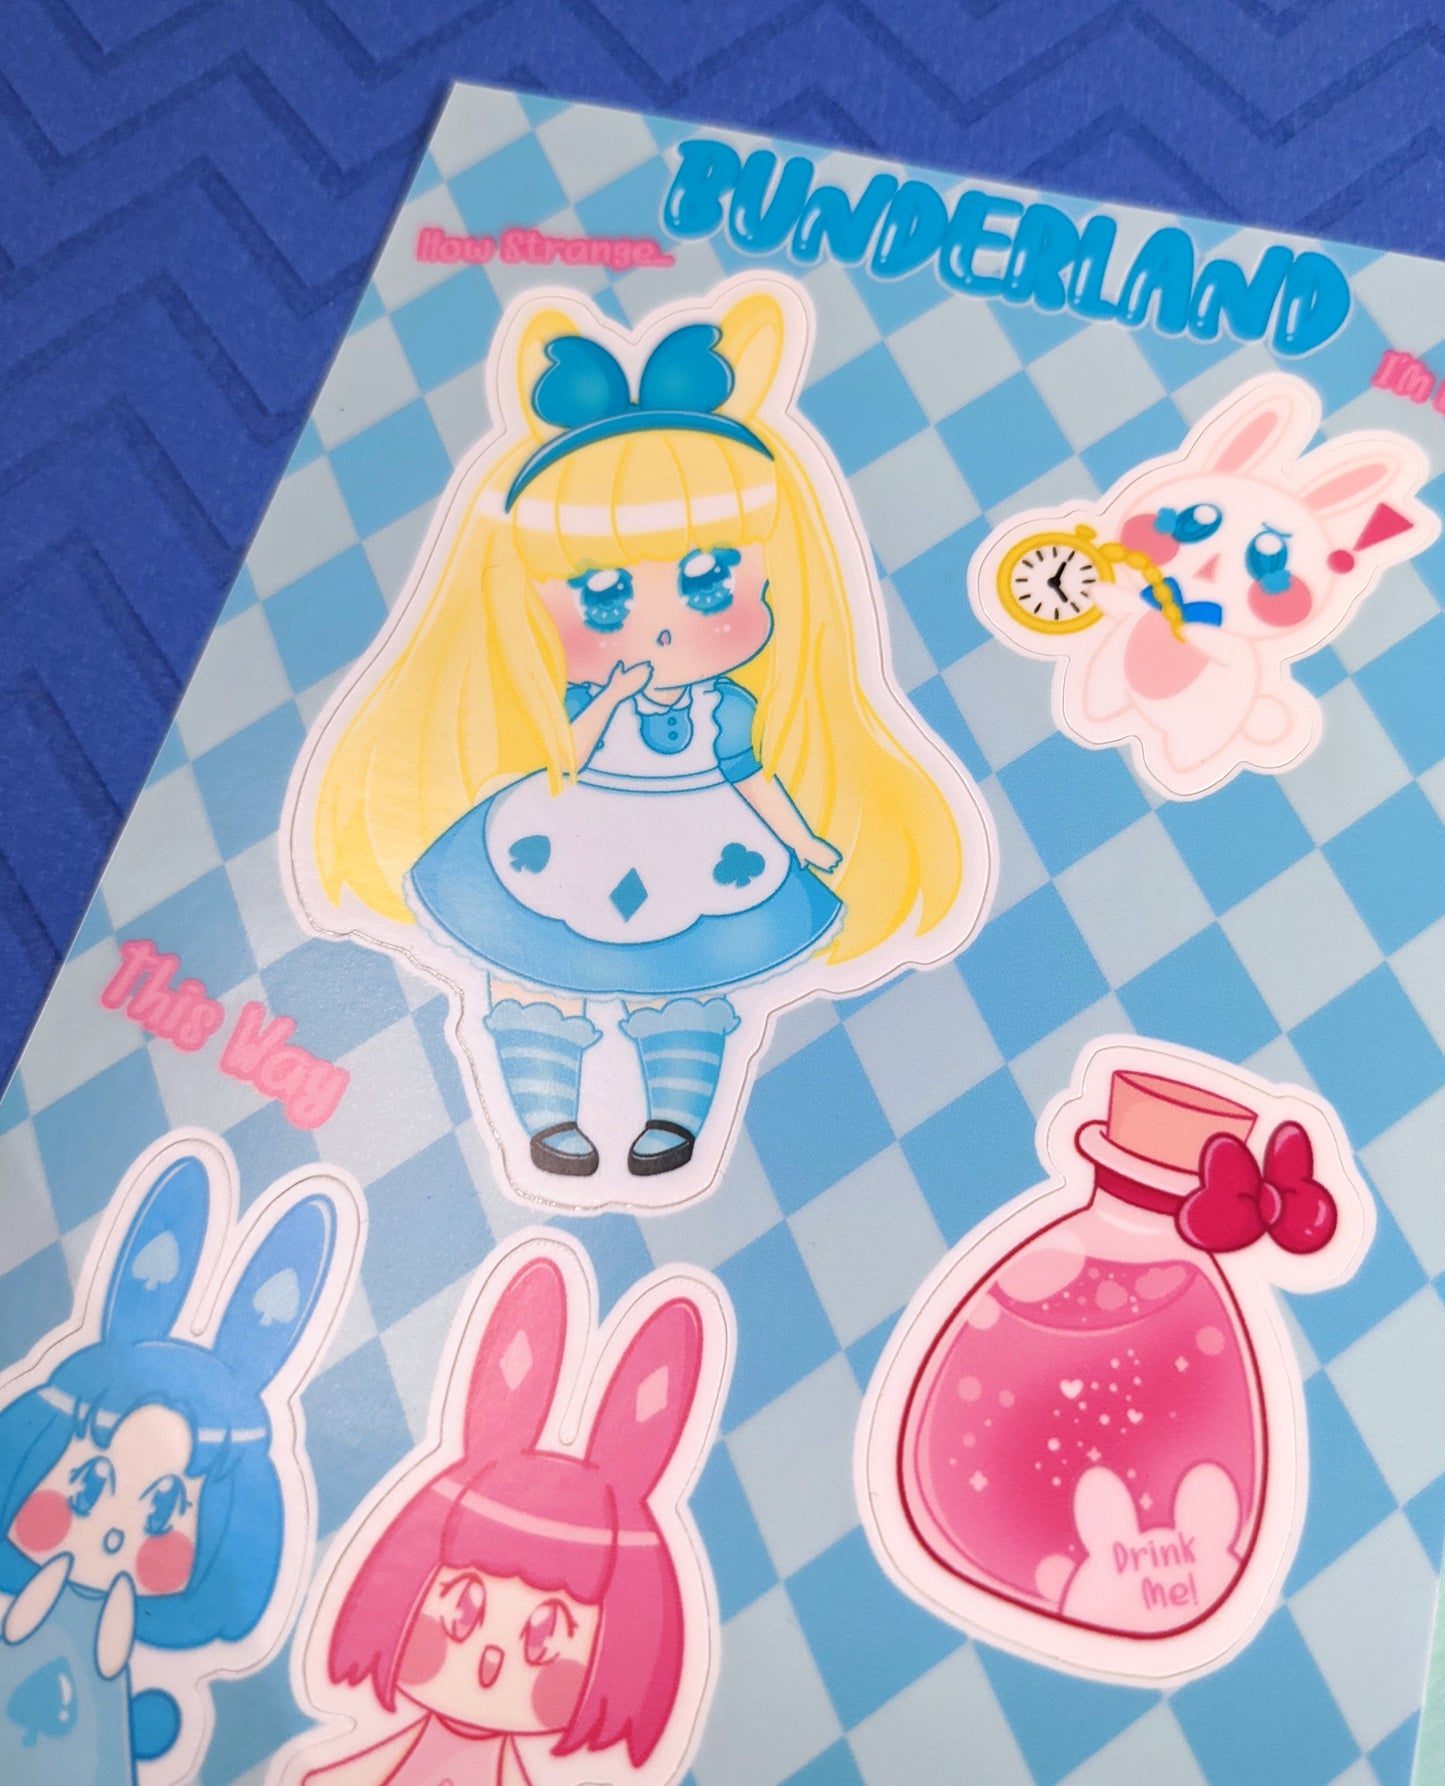 Bunderland Sticker Sheet